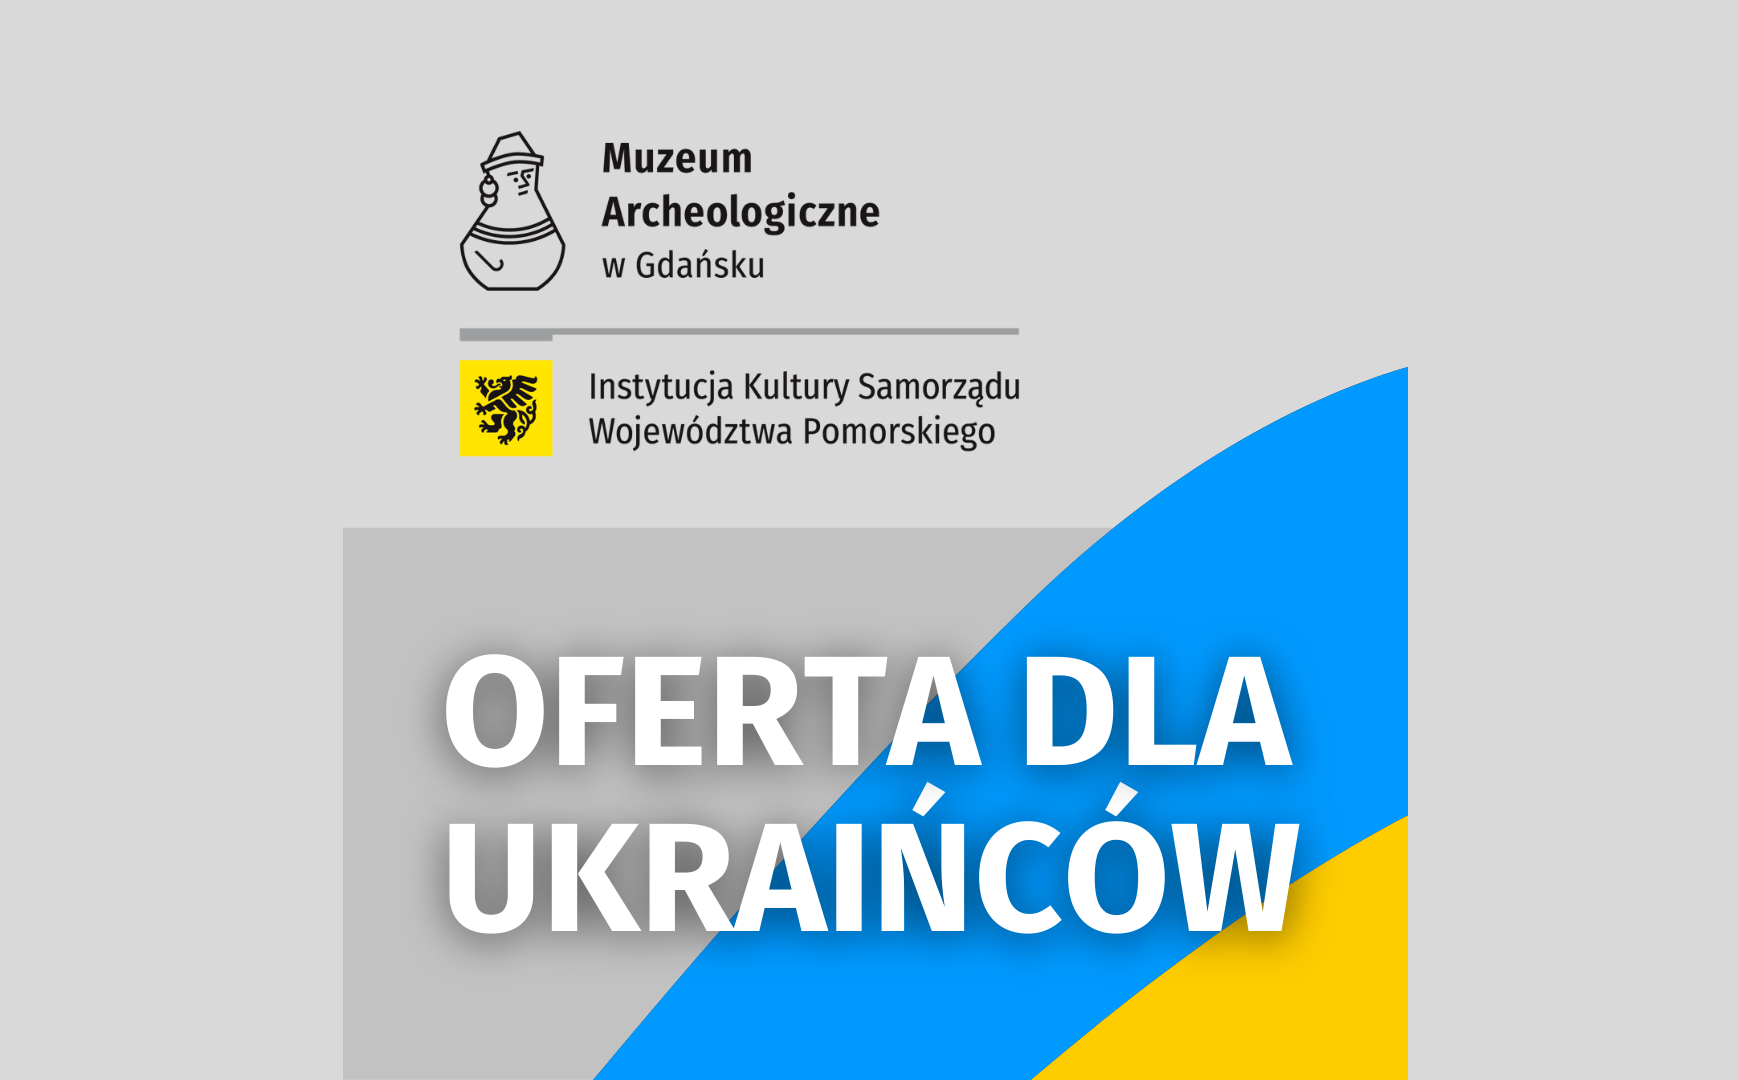 Діяльність Археологічного музею в Гданську, присвячена громадянам України